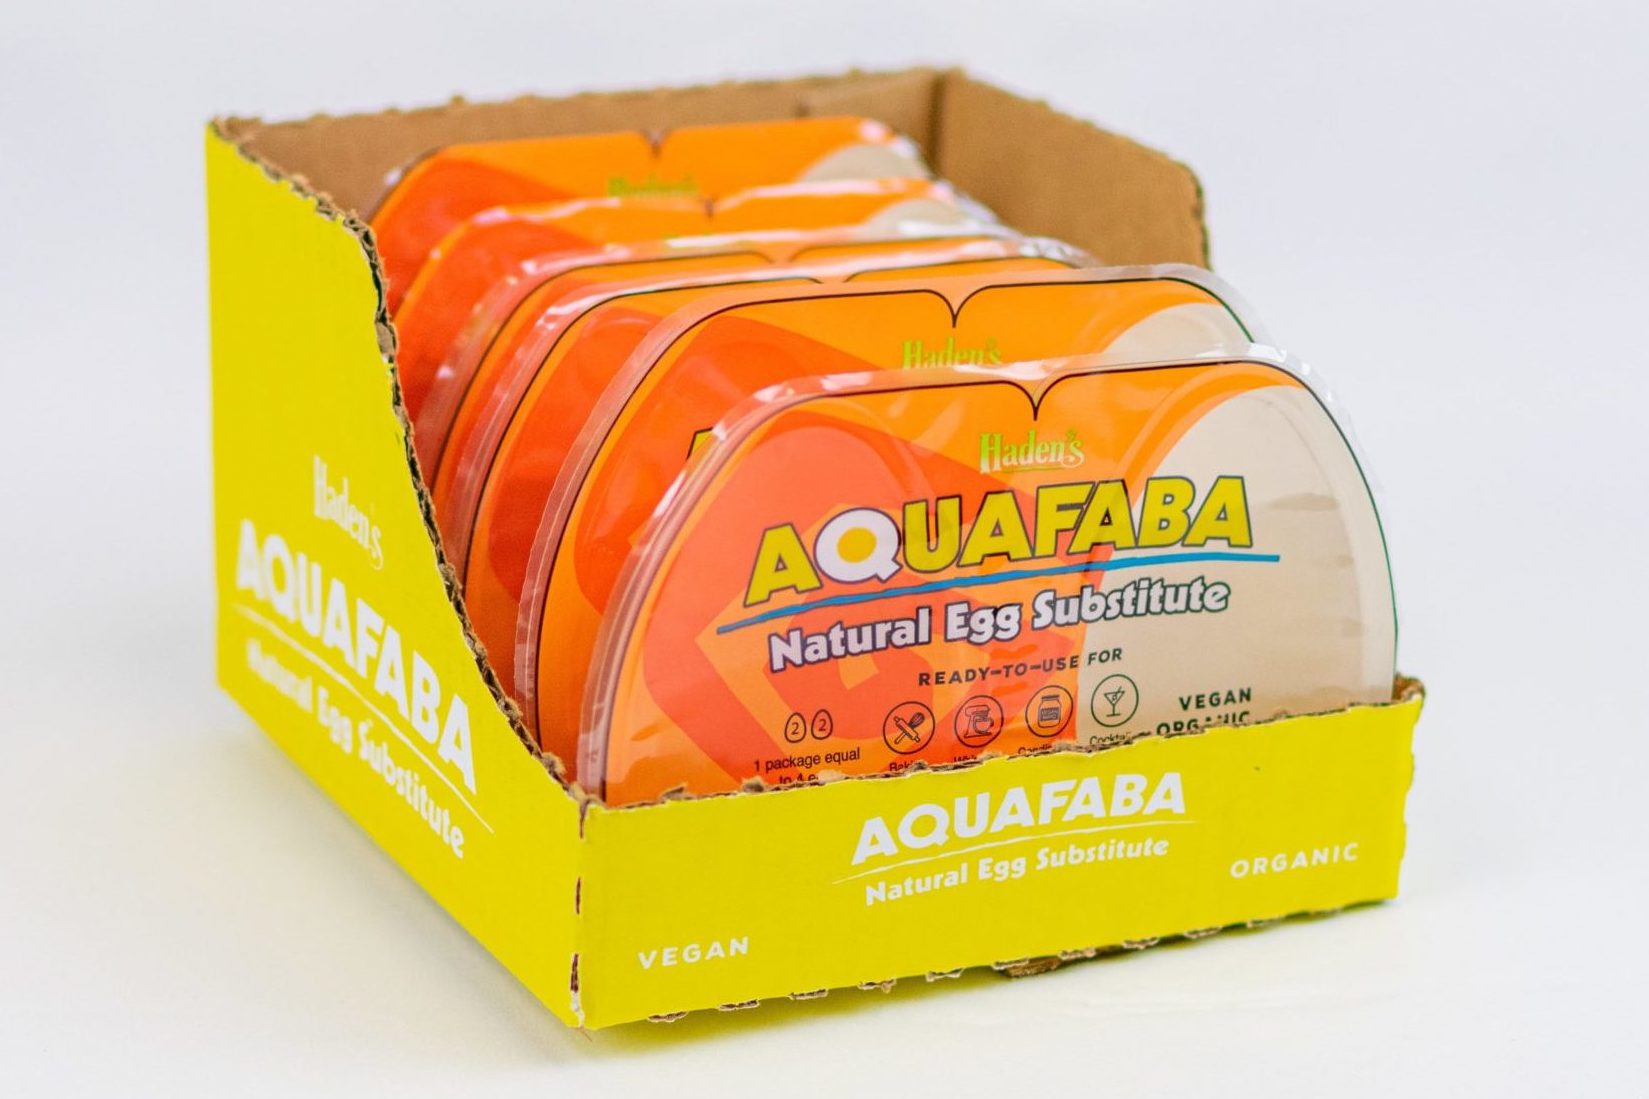 Shop: Order Aquafaba Online